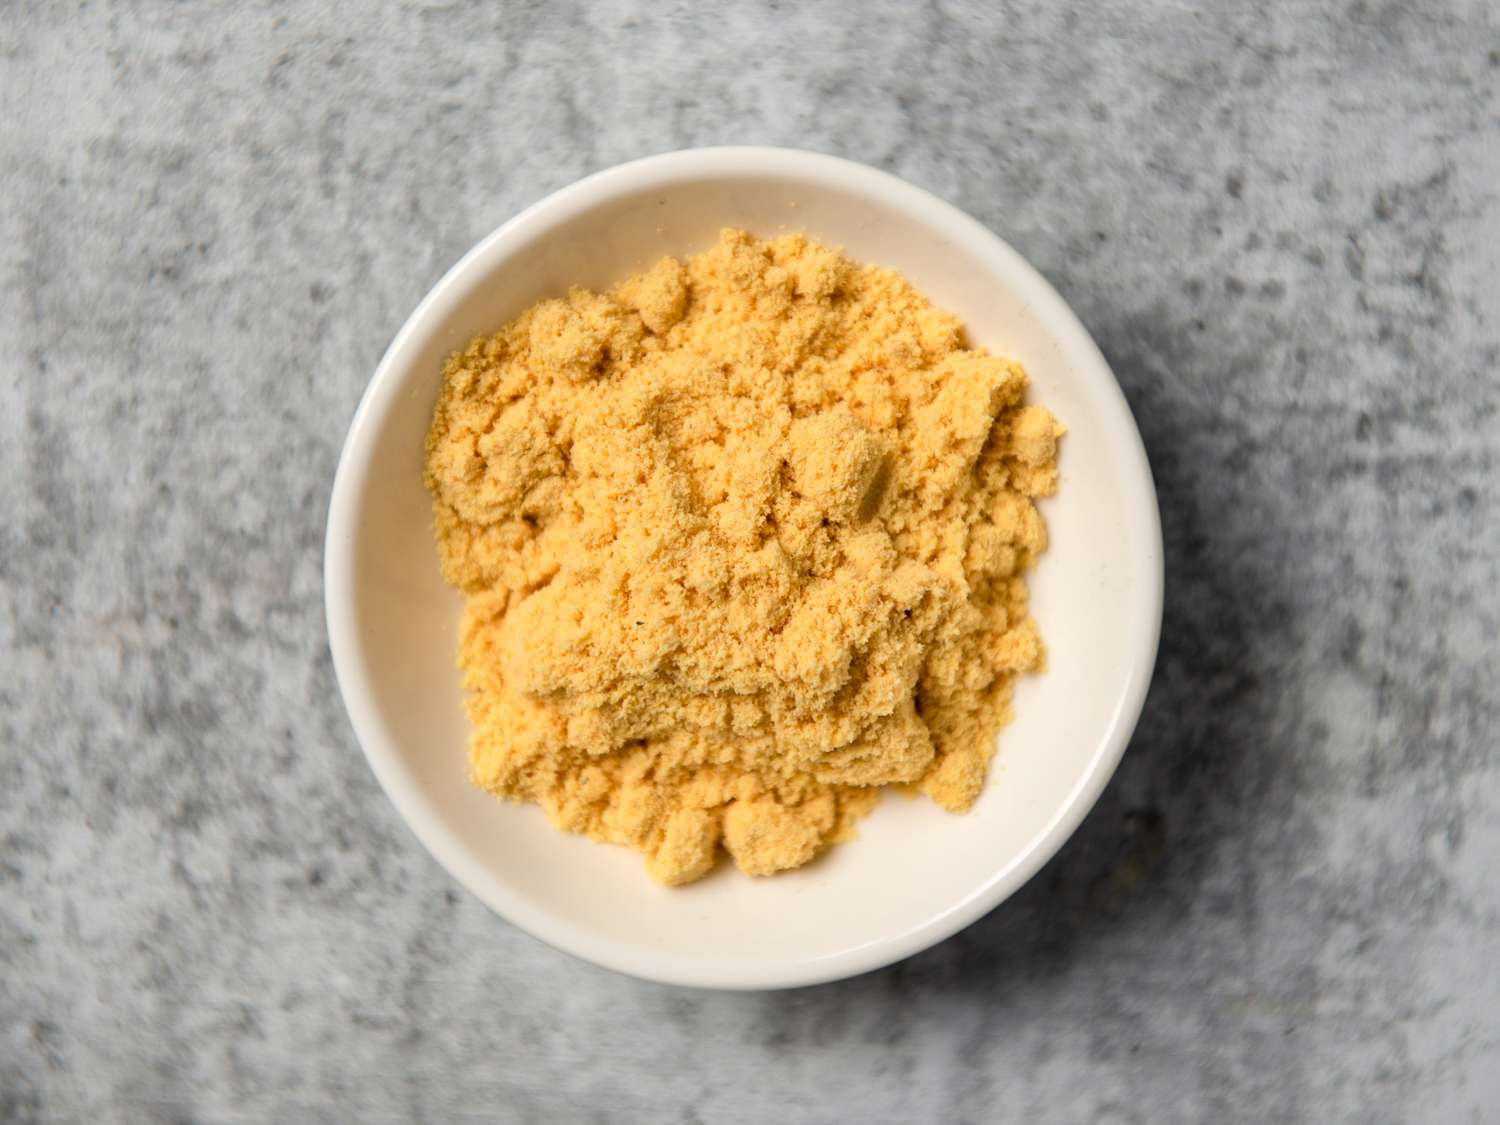 科尔曼英式芥末粉装在小白碗里